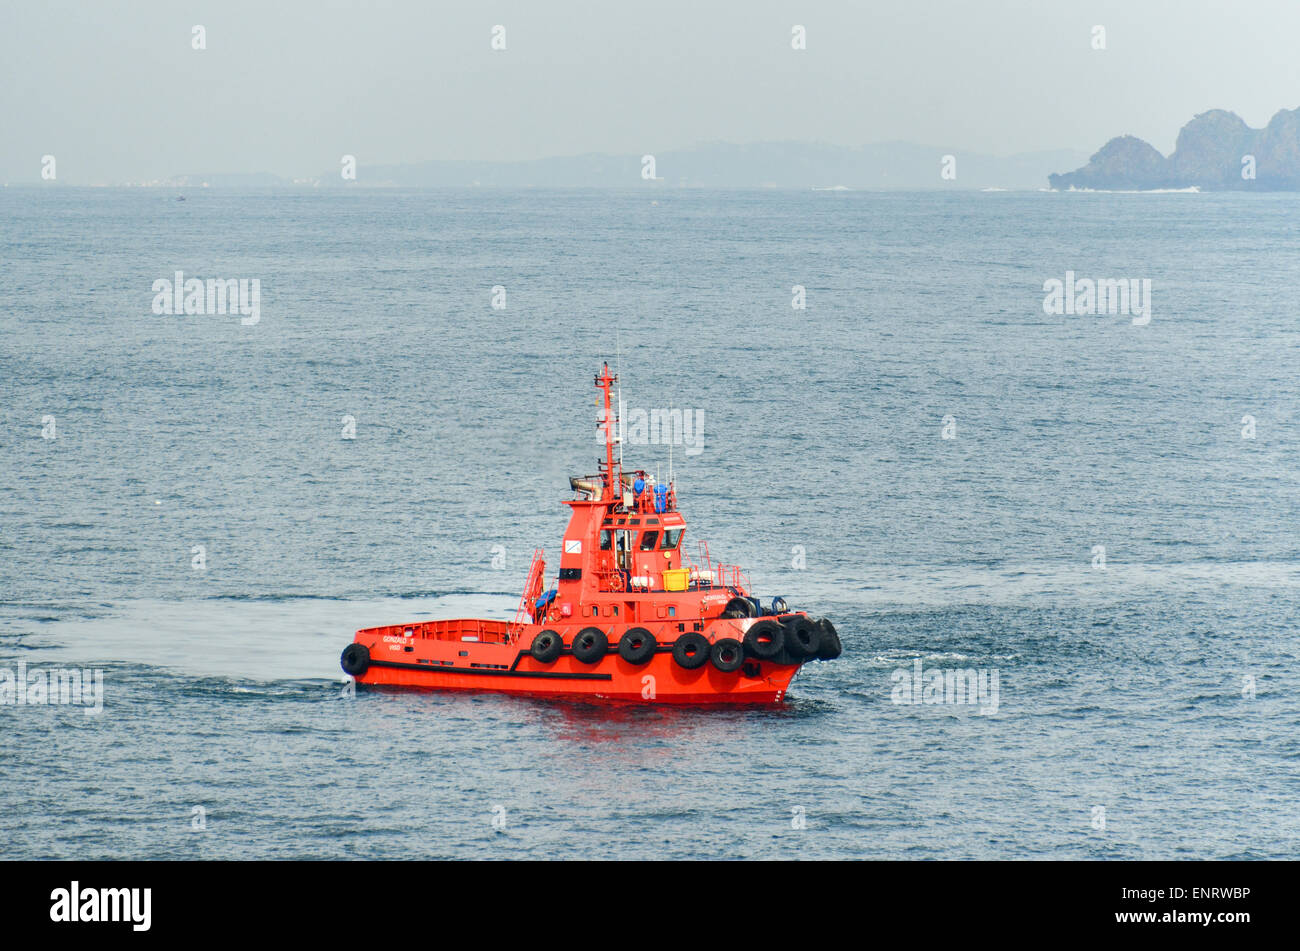 Tug boat in the Ria de Vigo, Spain Stock Photo